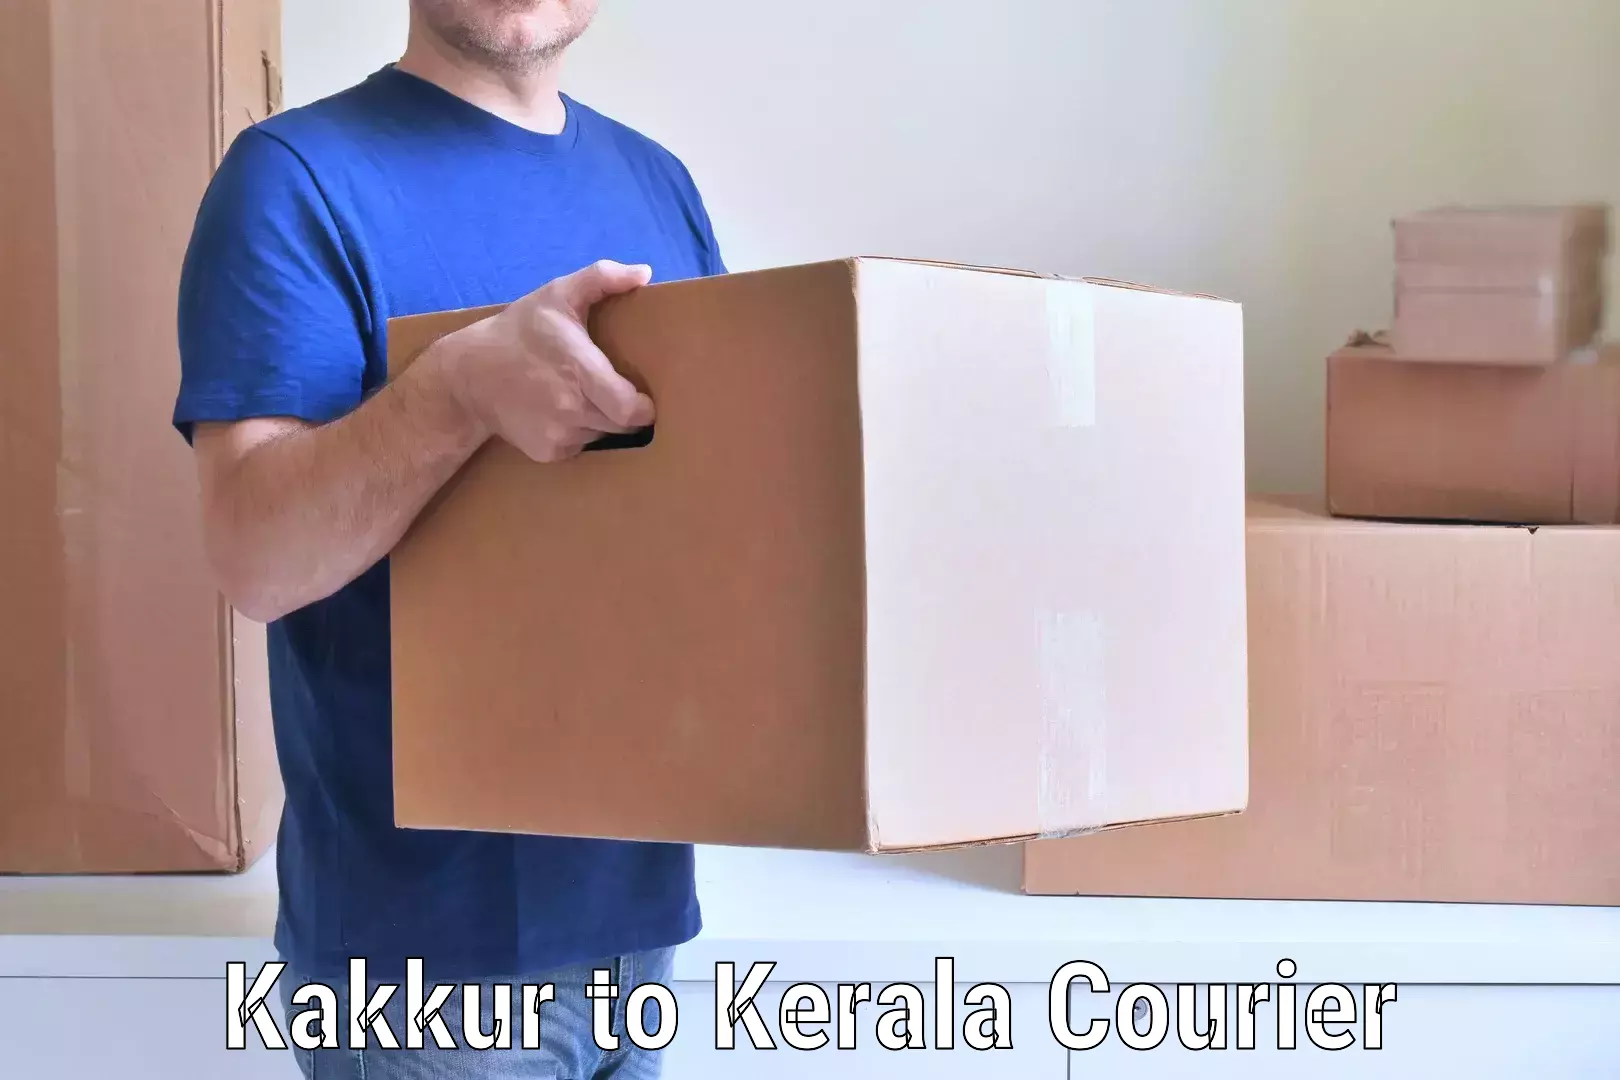 Professional packing services Kakkur to Kanhangad